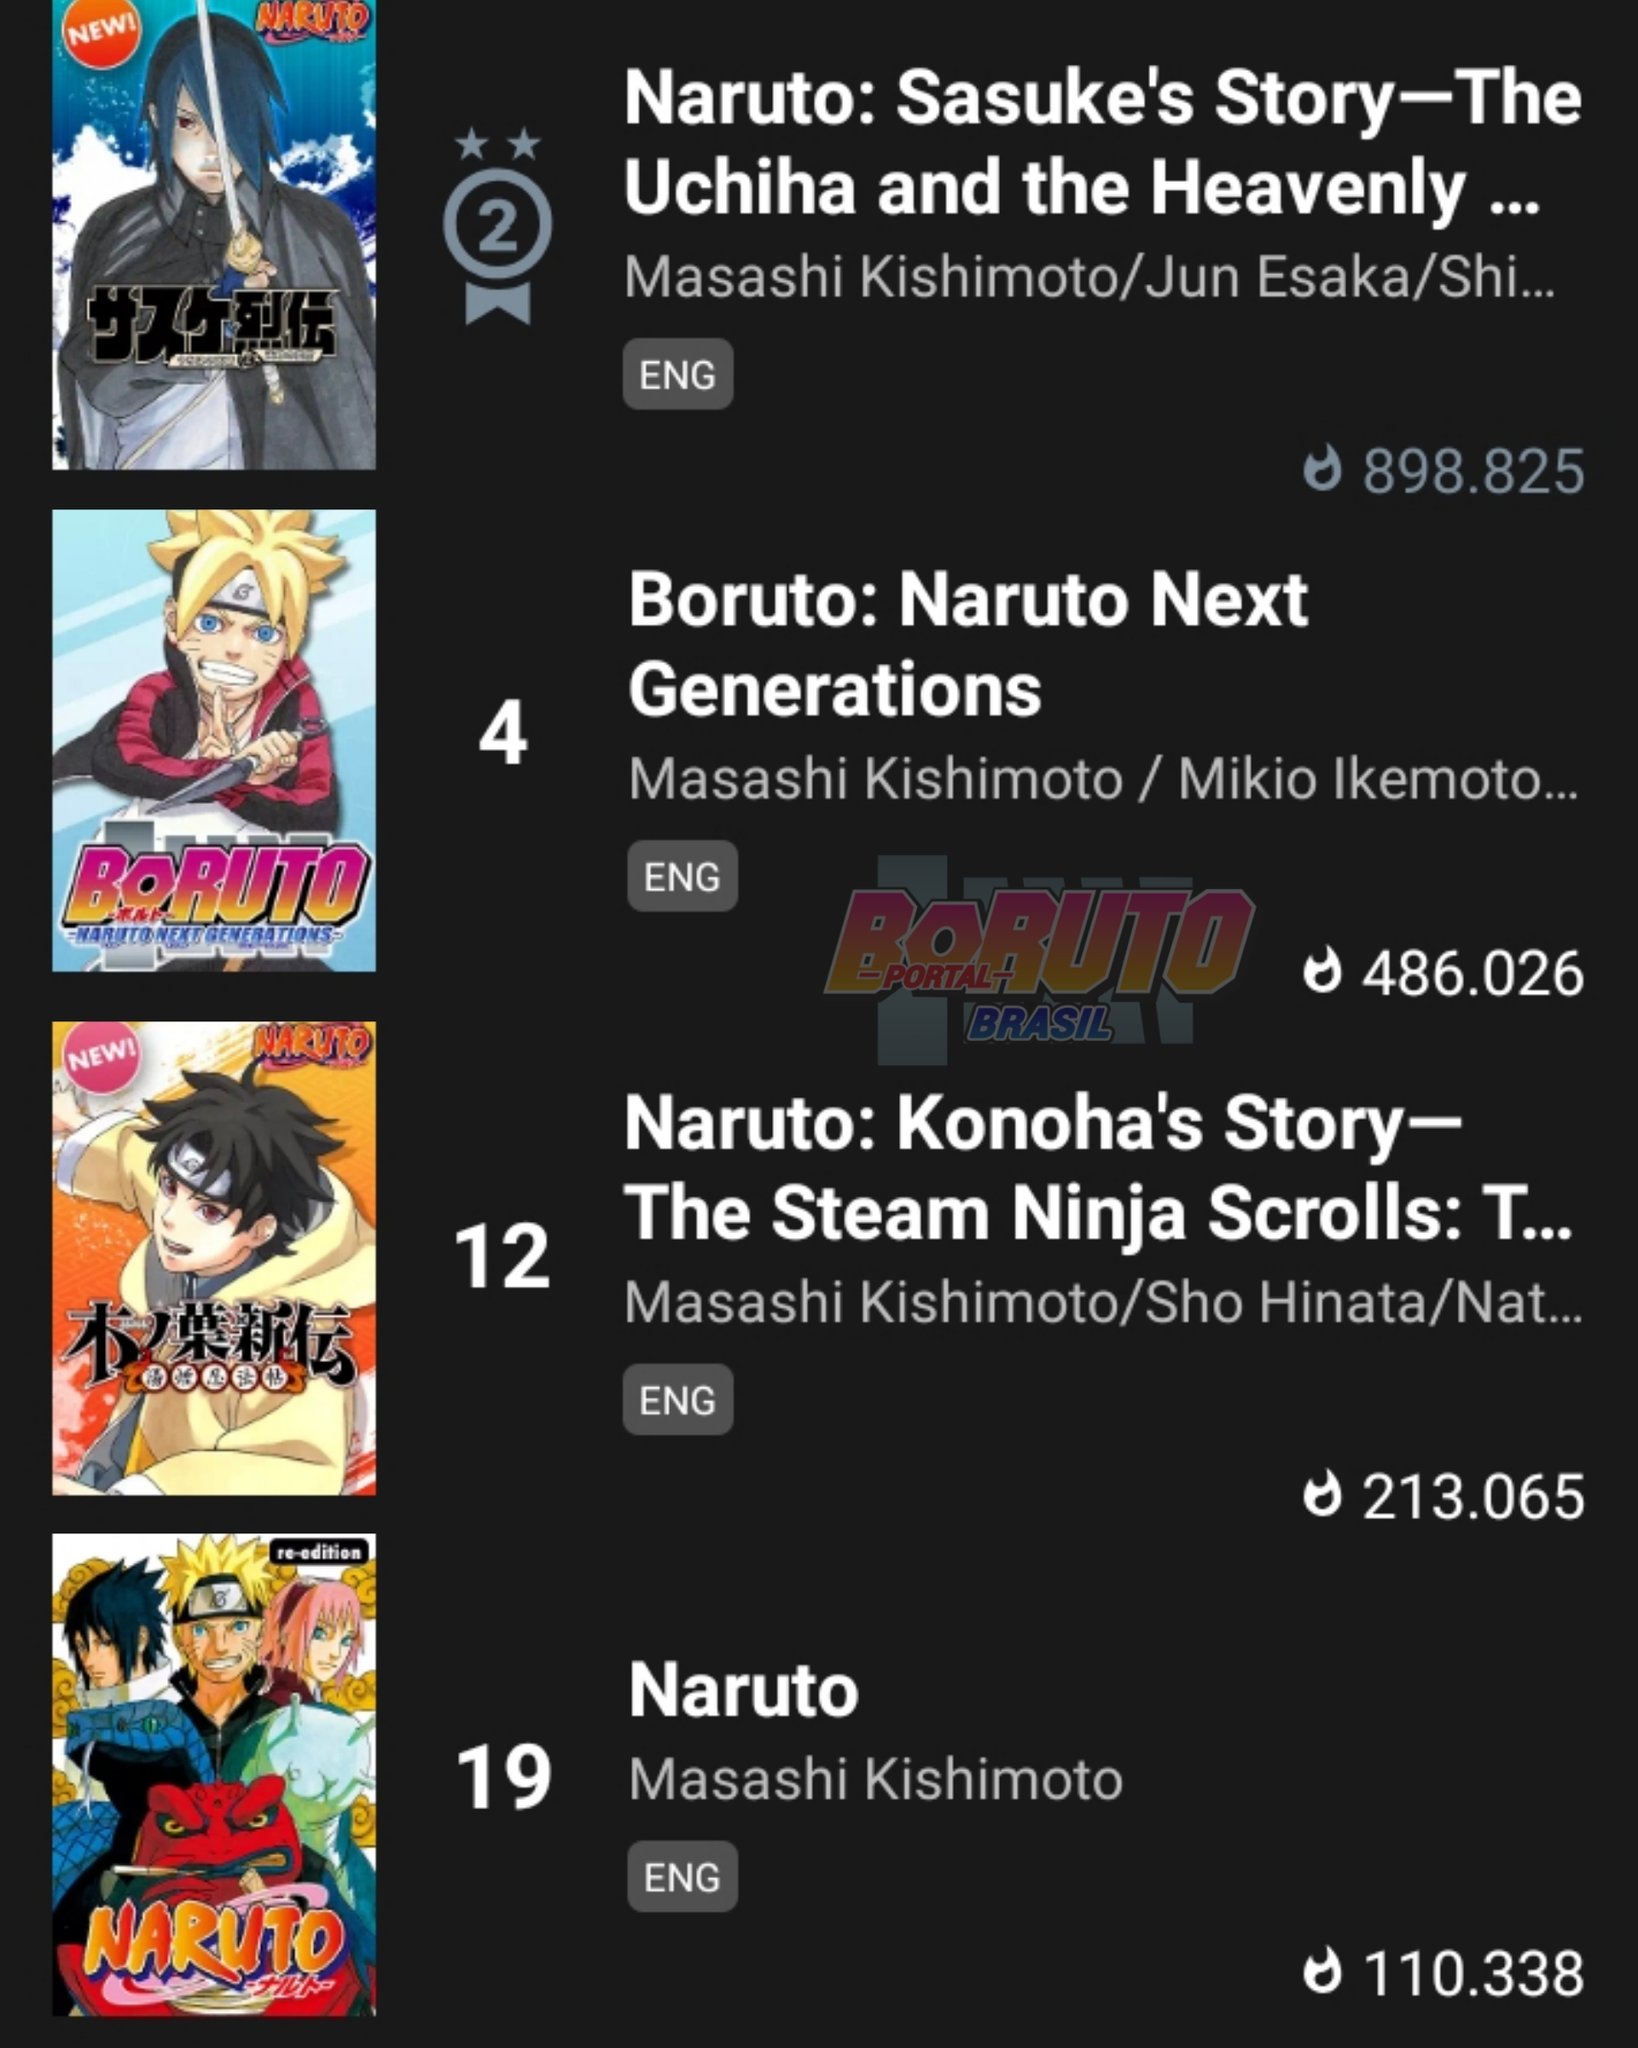 Boruto Naruto Next Generations: Sannin Lendário vai retornar! - Aficionados